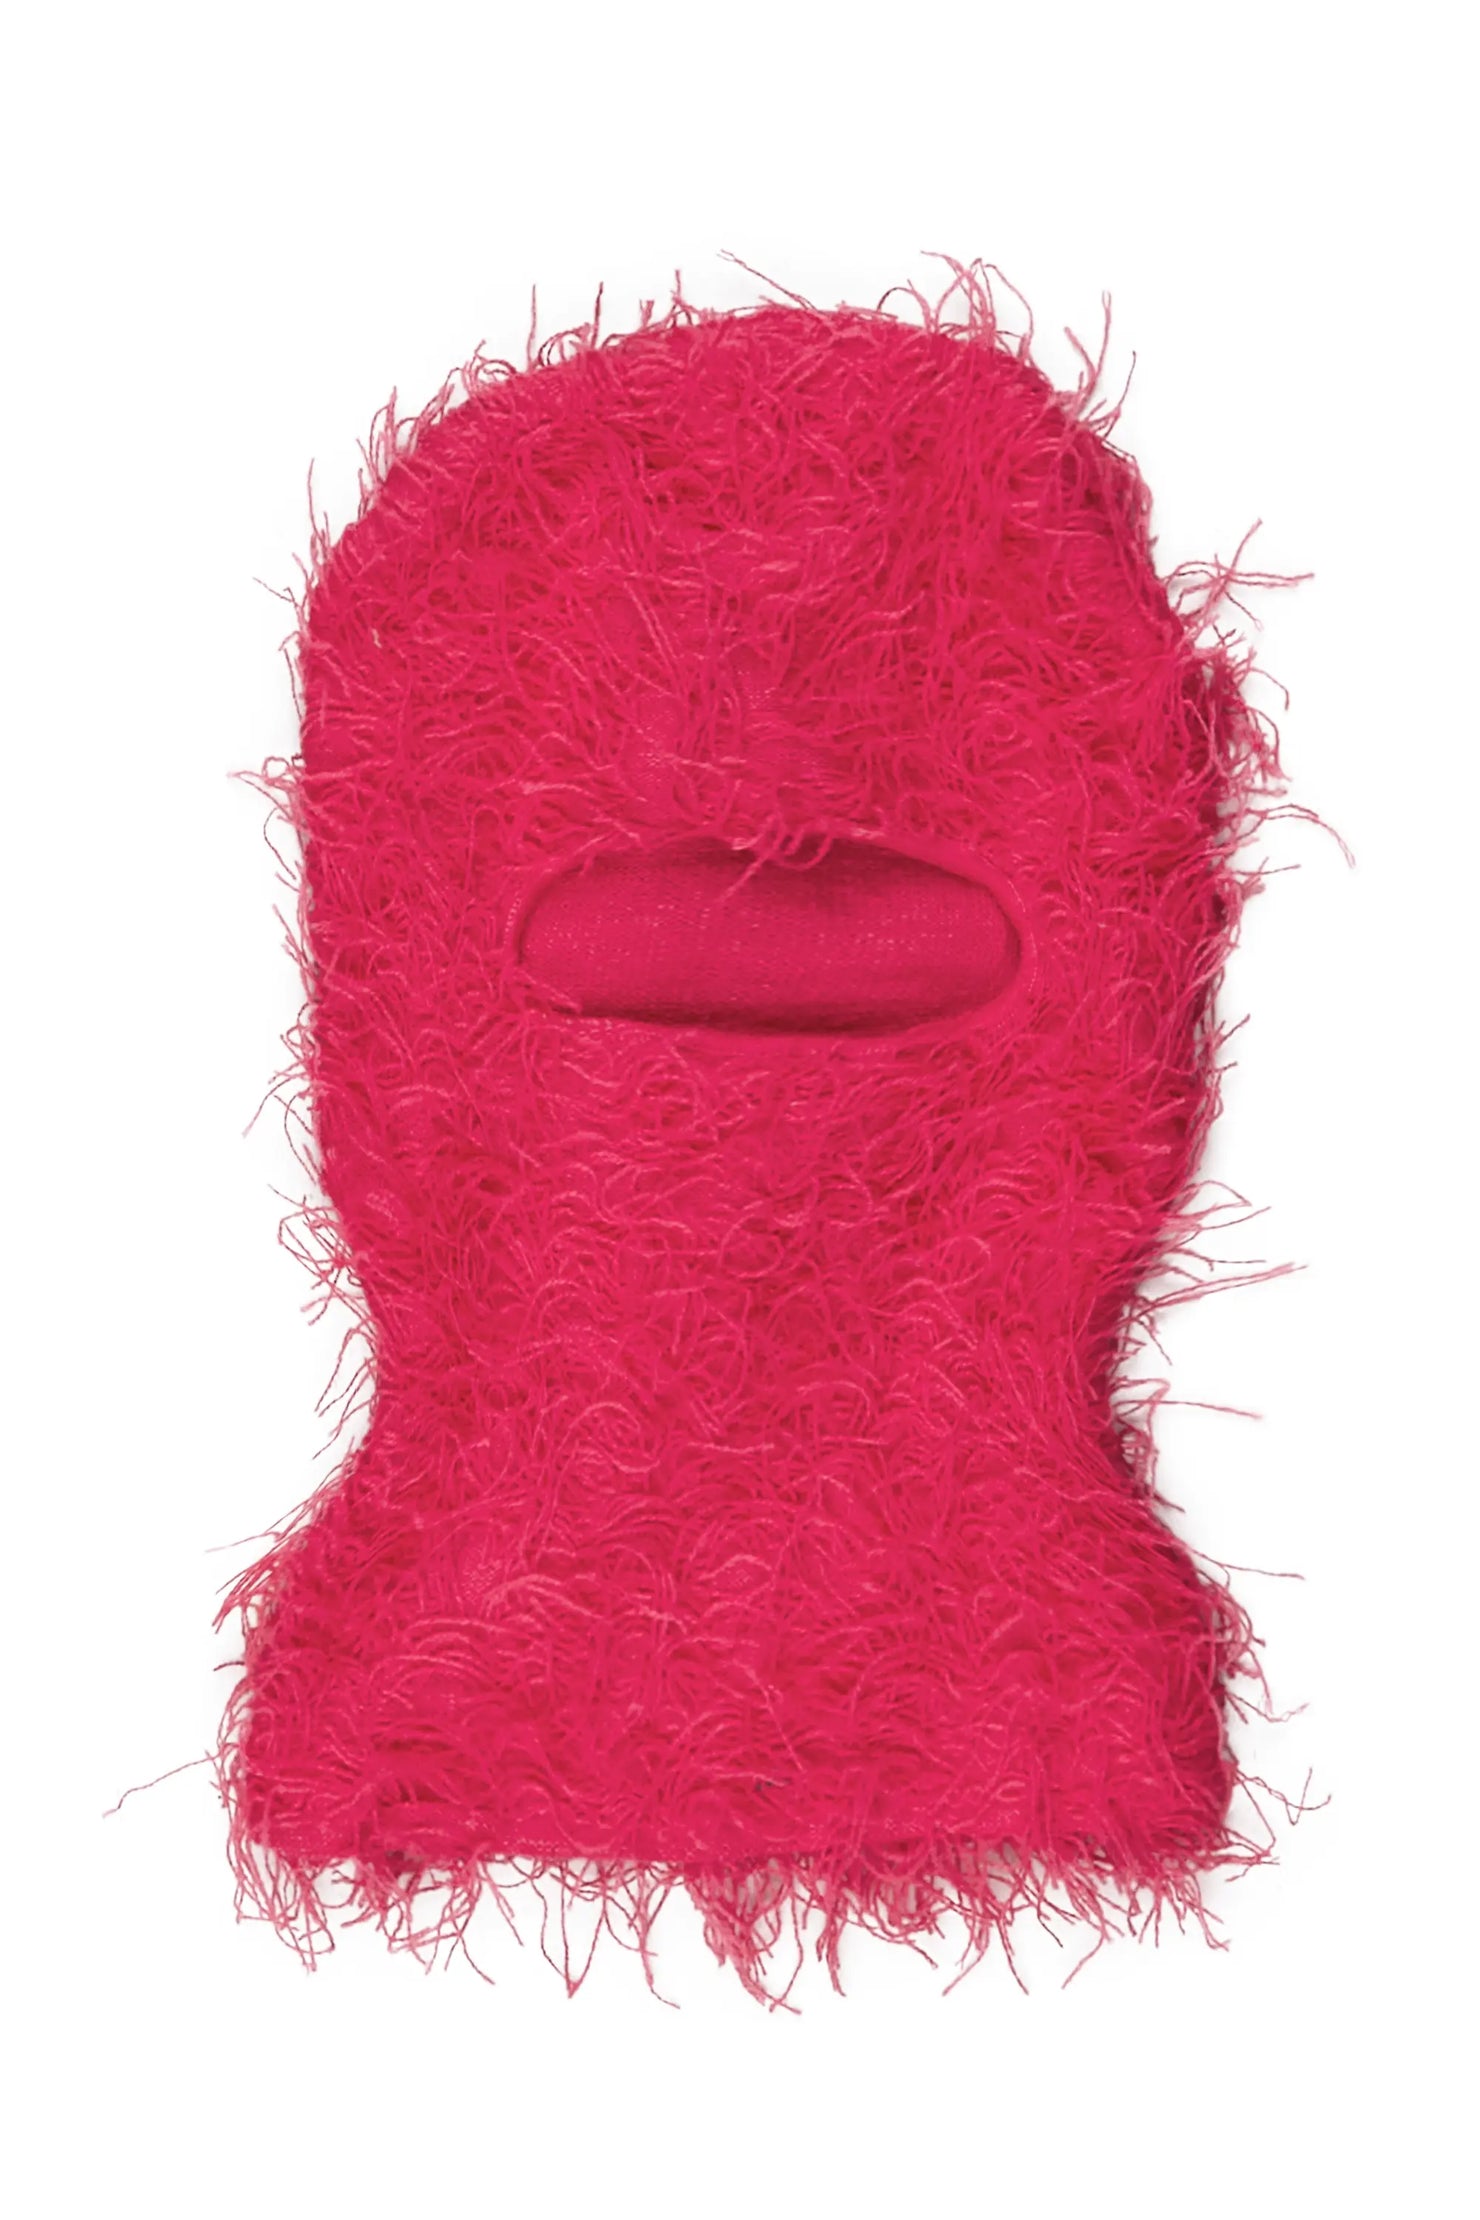 Otto Hot Pink Fuzzy Ski Mask